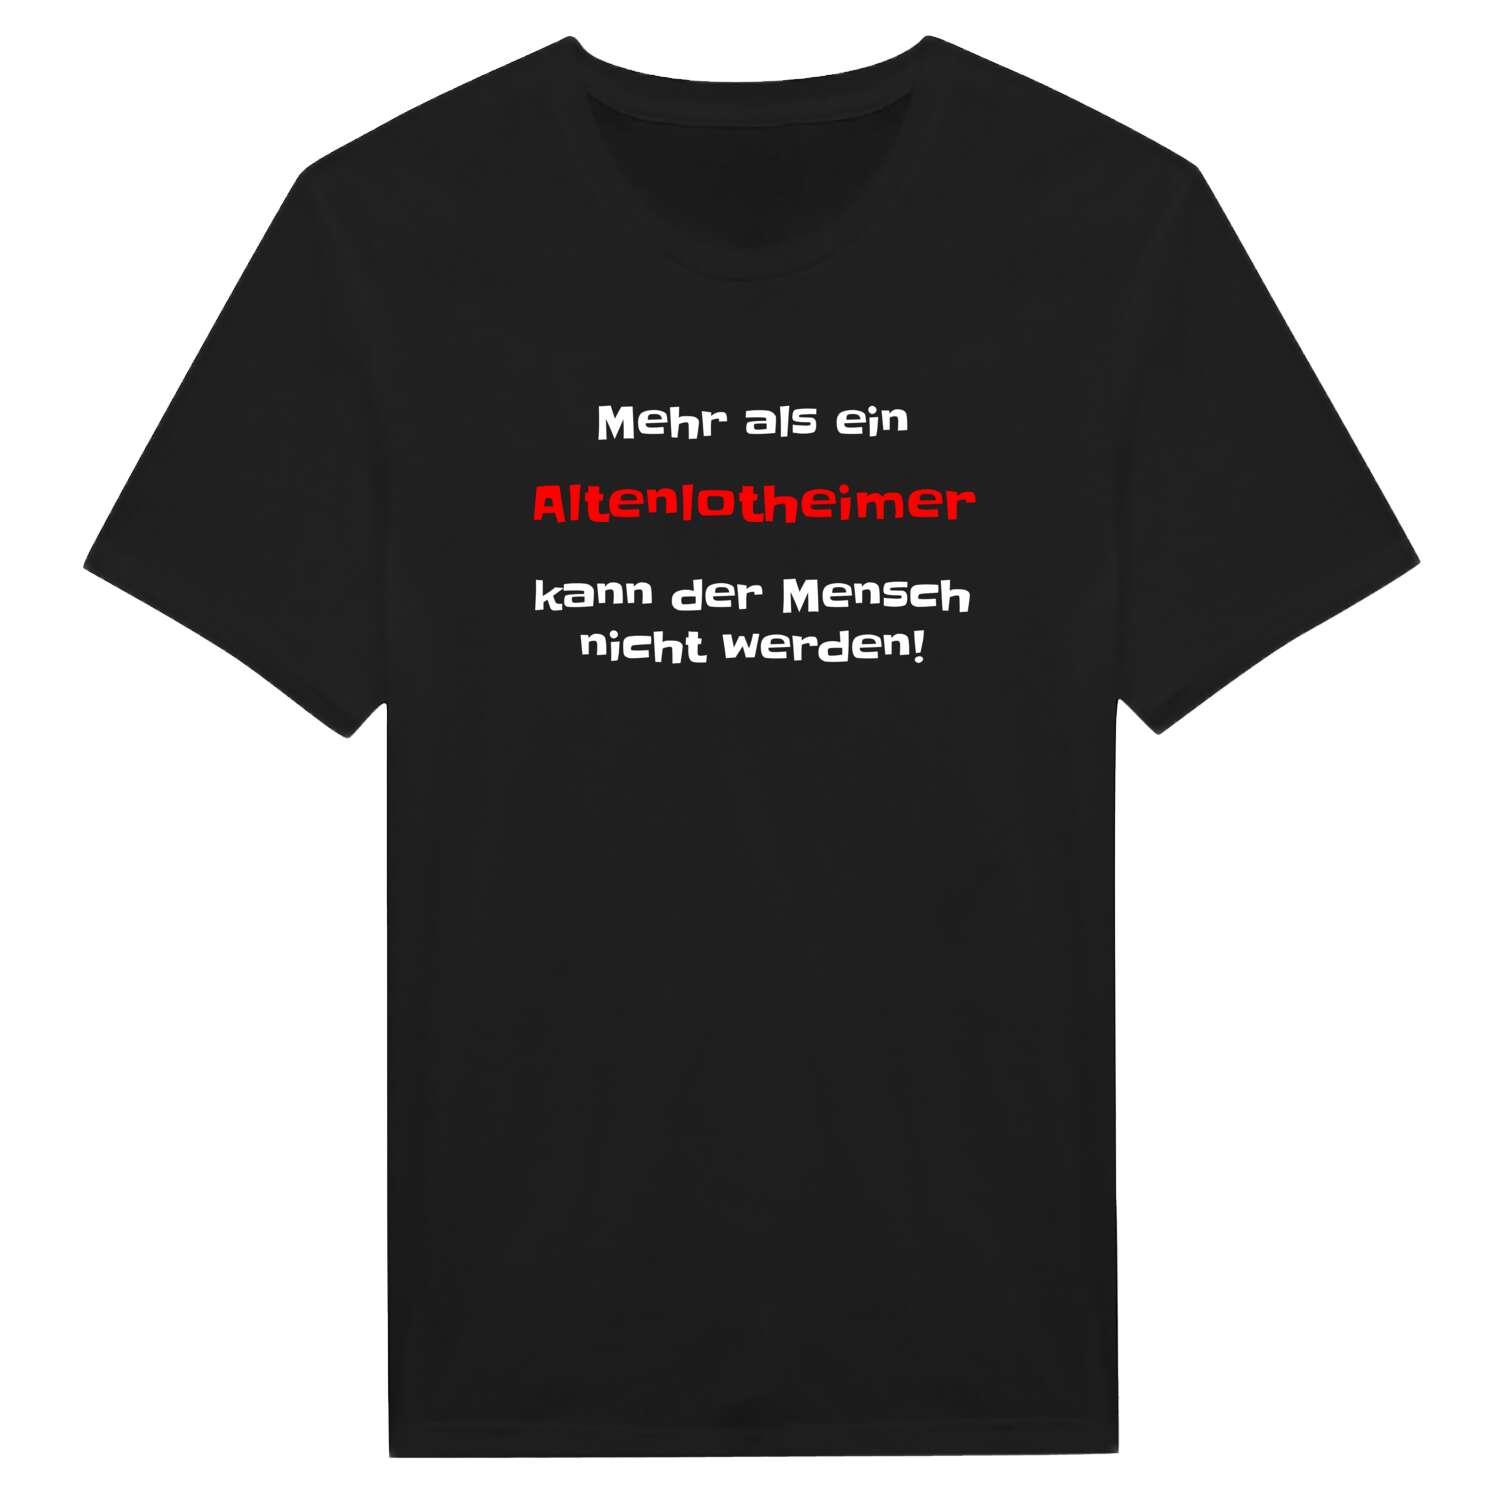 Altenlotheim T-Shirt »Mehr als ein«